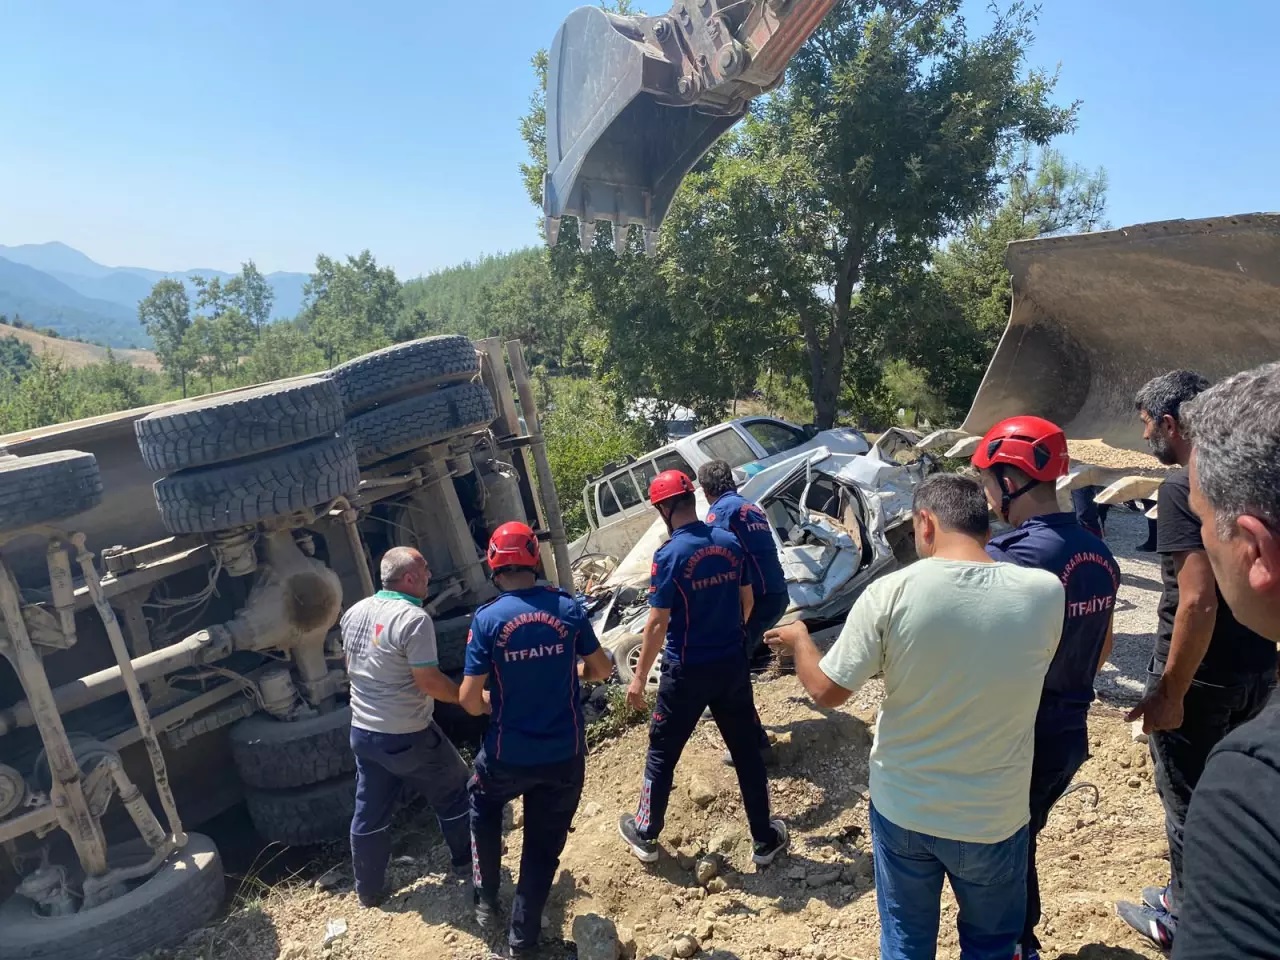 KAHRAMANMARAŞ - Freni boşalan kamyon cenaze namazı için bir araya gelen vatandaşlara çarptı - Vali Mükerrem Ünlüer